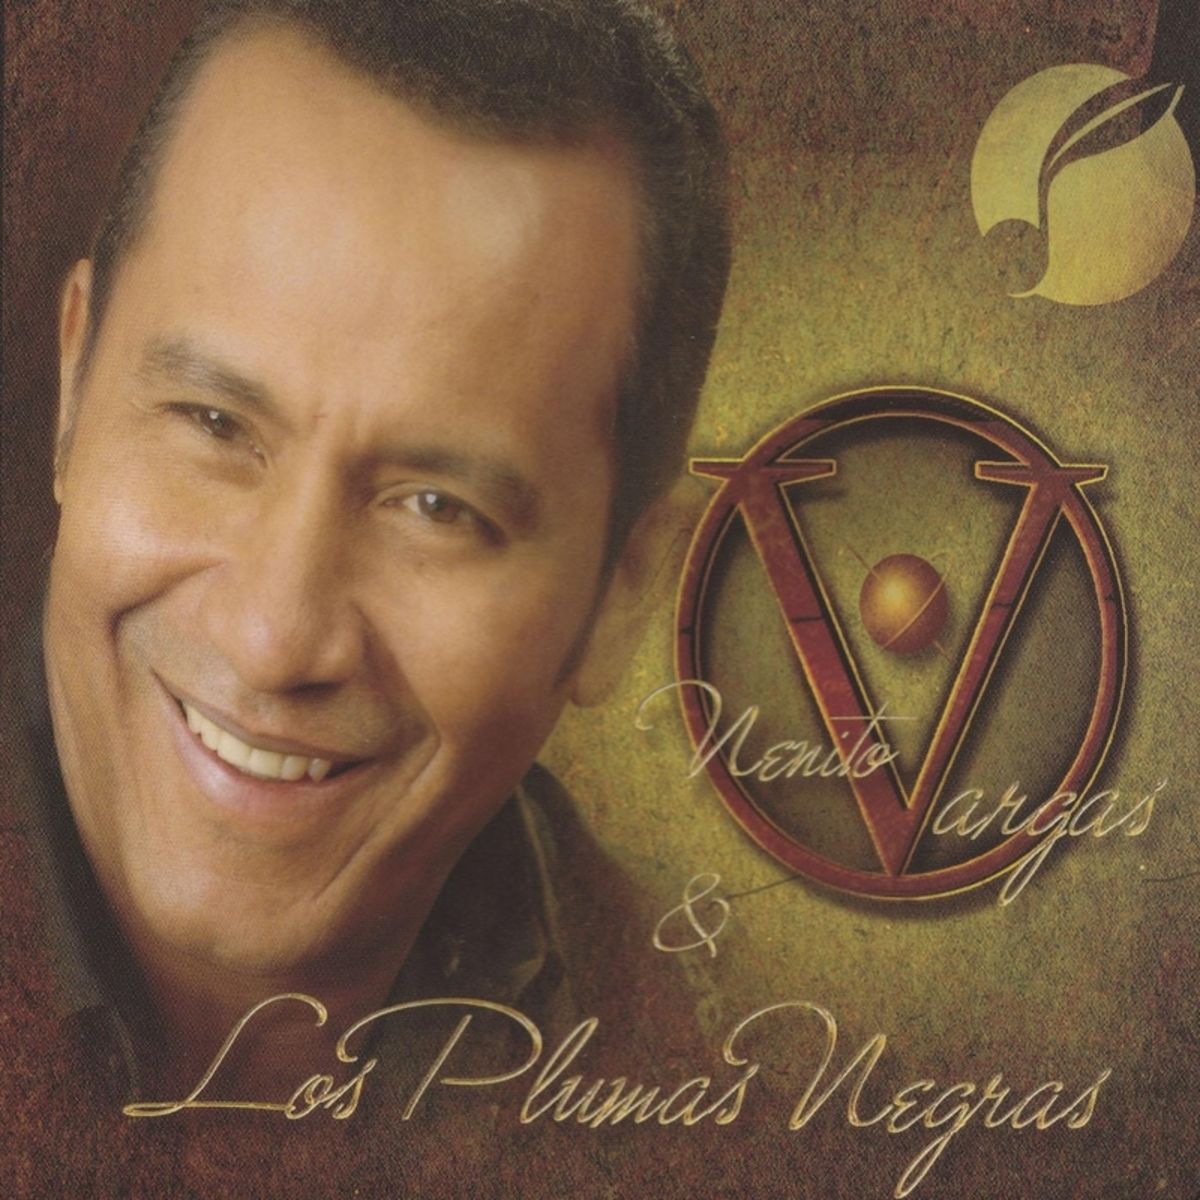 2 - Nenito Vargas y los Plumas Negras - Sin Ti No Quiero Nada.mp3